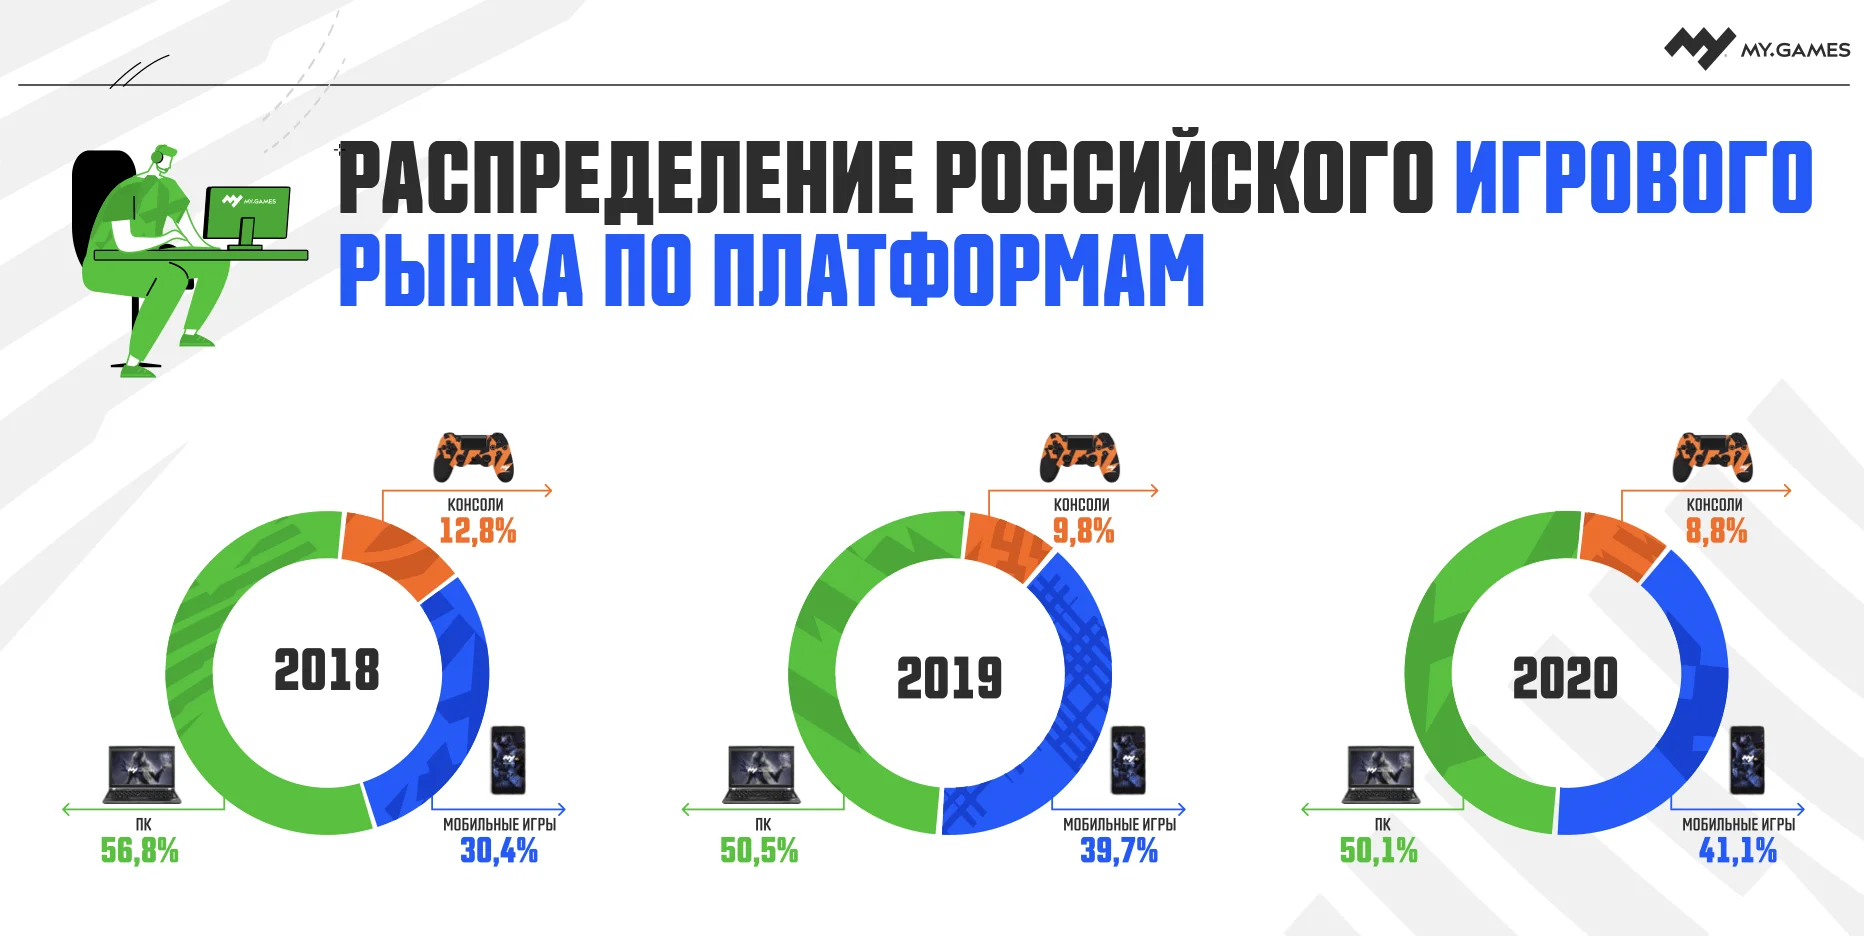 Исследование: объем рынка видеоигр в РФ вырос на 35% в 2020 году

 - фото 1